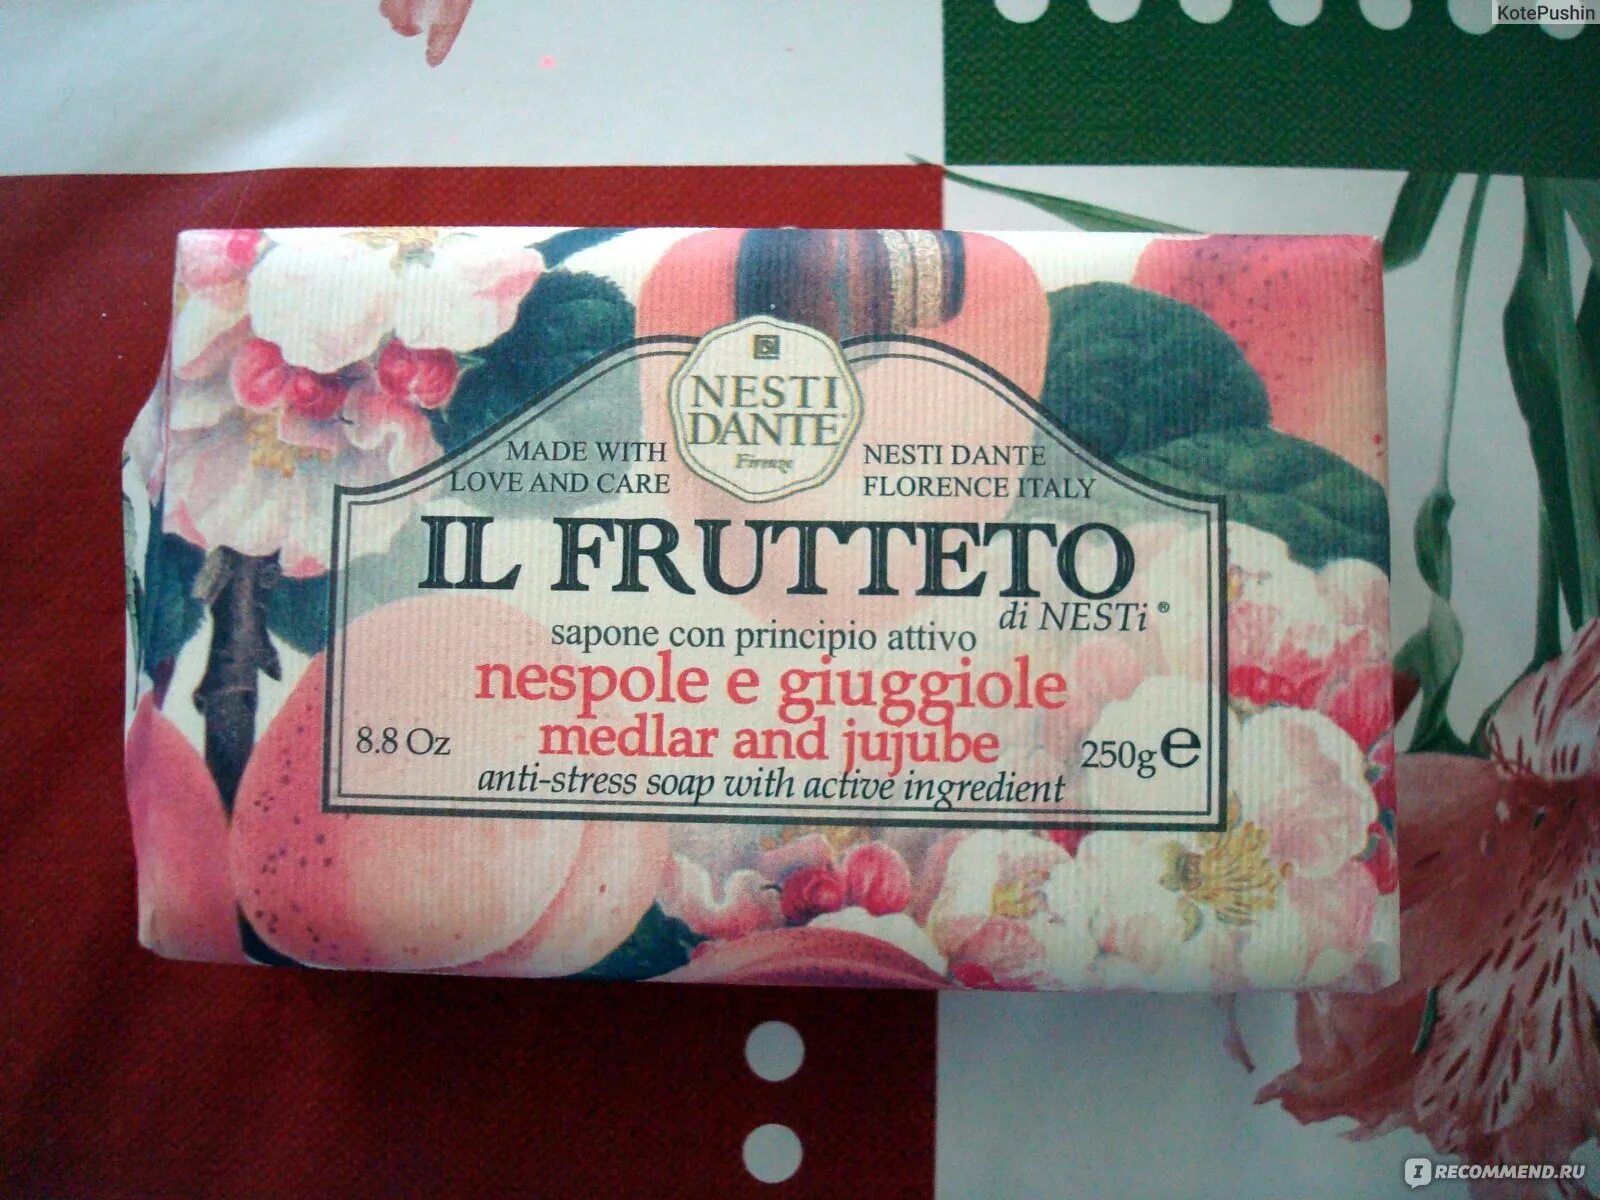 Мыло воняет. Il Frutteto мыло. Мыло туалетное нести Данте. Мыло с запахом цветов. Летуаль Nesti Dante.